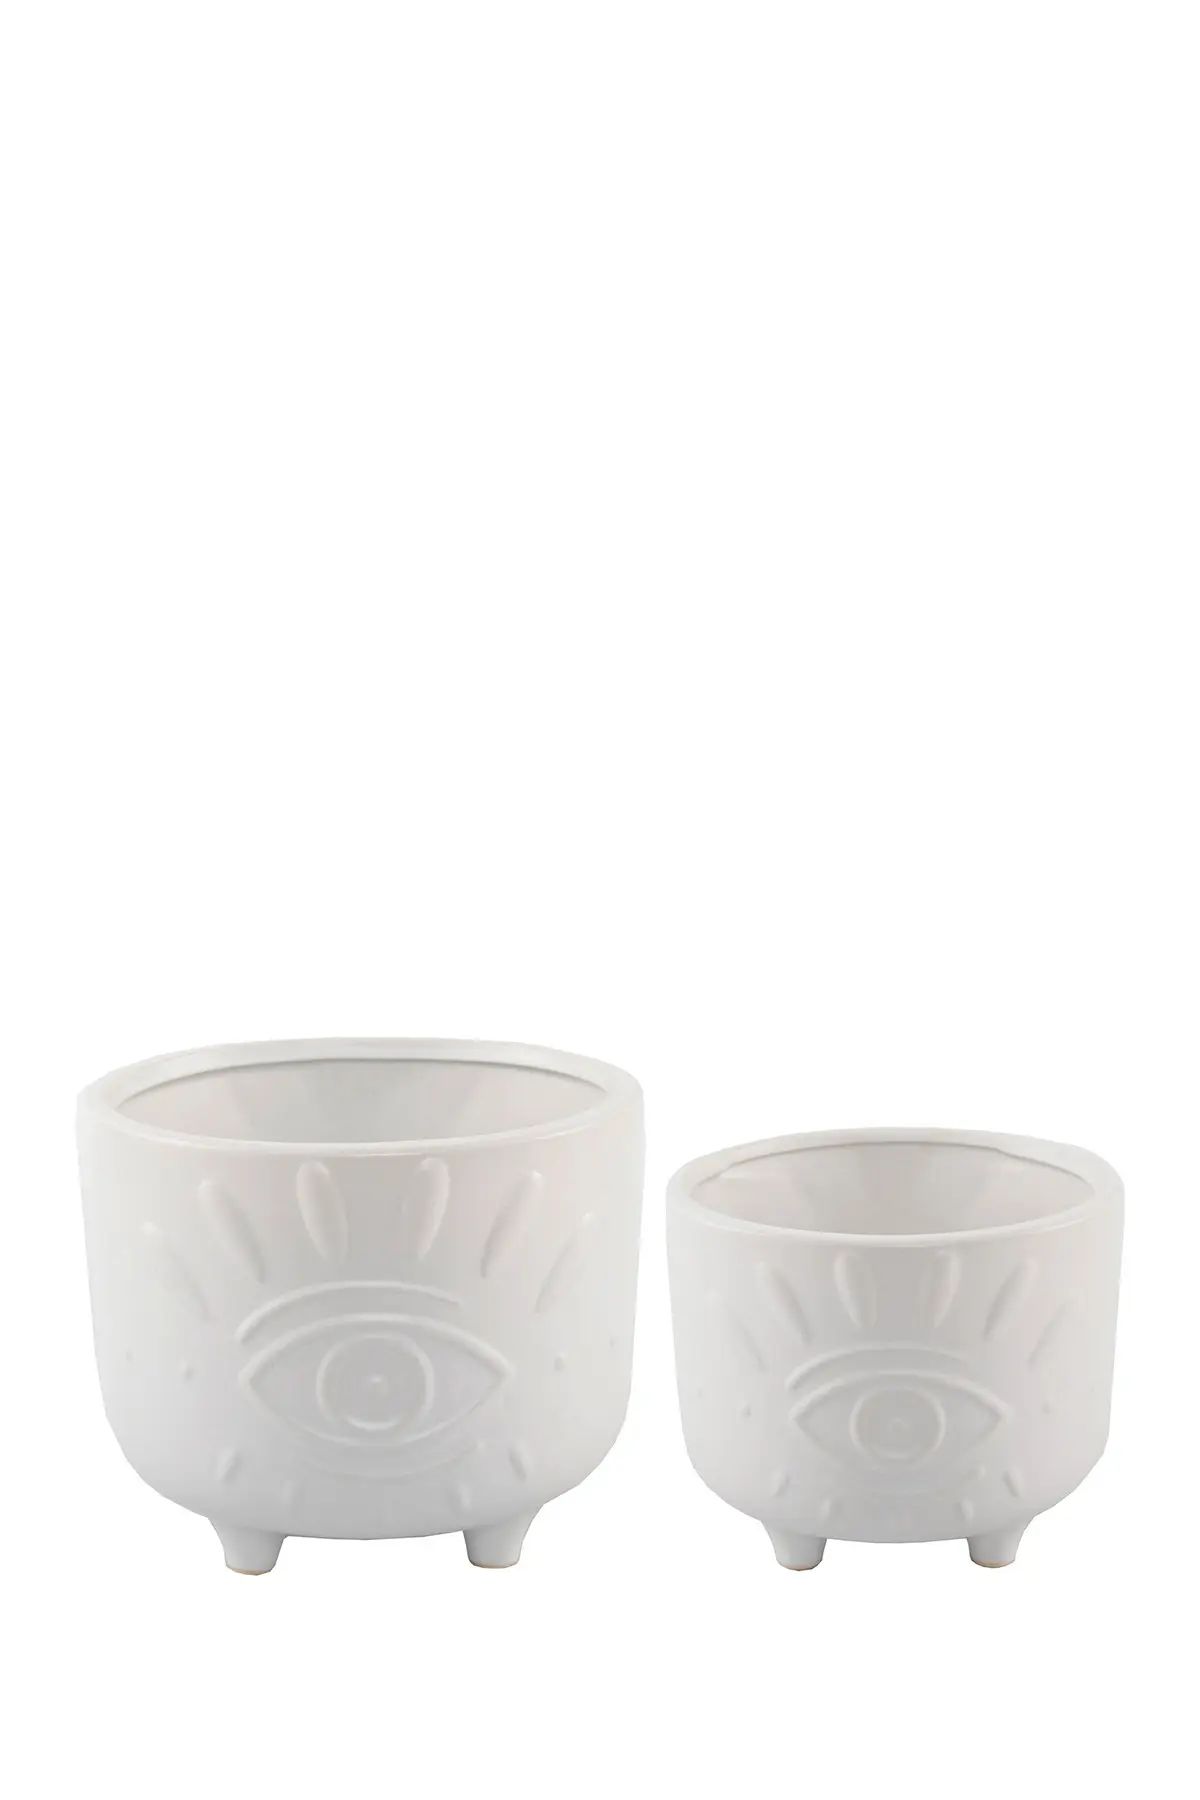 FLORA BUNDA Matte White 6" & 4.75" Evil Eye Ceramic Footed Planter- Set of 2 at Nordstrom Rack | Nordstrom Rack